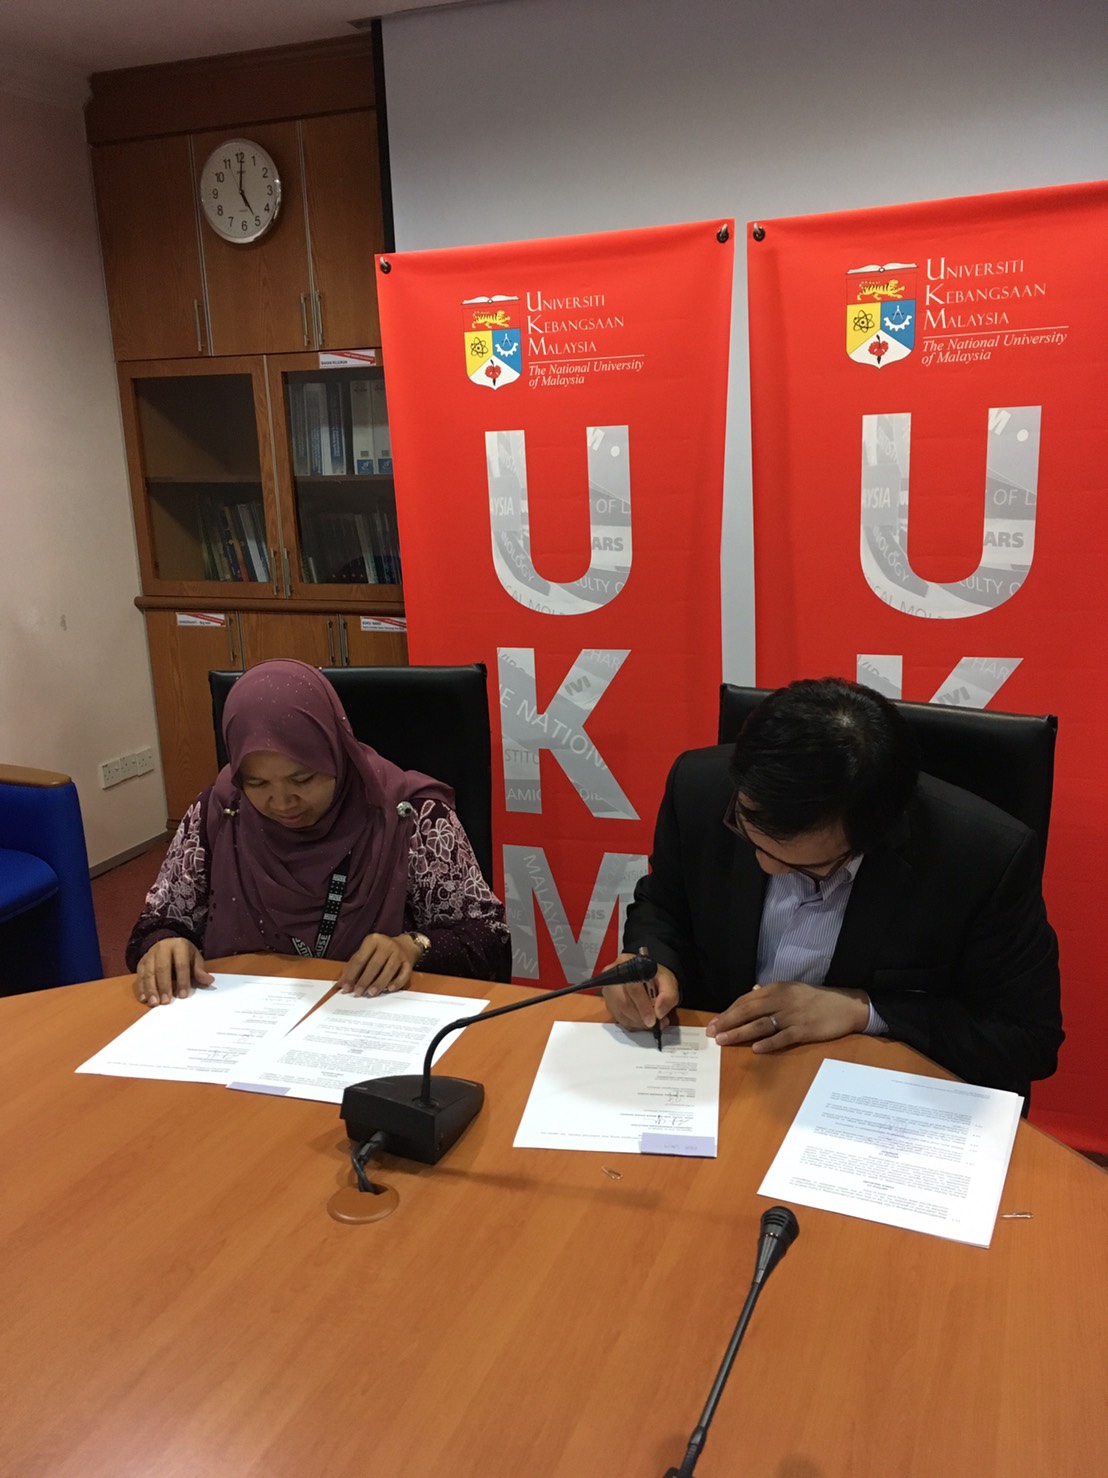 พิธีลงนามบันทึกข้อตกลงความร่วมมือทางวิชาการ ระหว่างคณะนิติศาสตร์ มหาวิทยาลัยเชียงใหม่ และ Universiti Kebangsaan Malaysia (UKM)